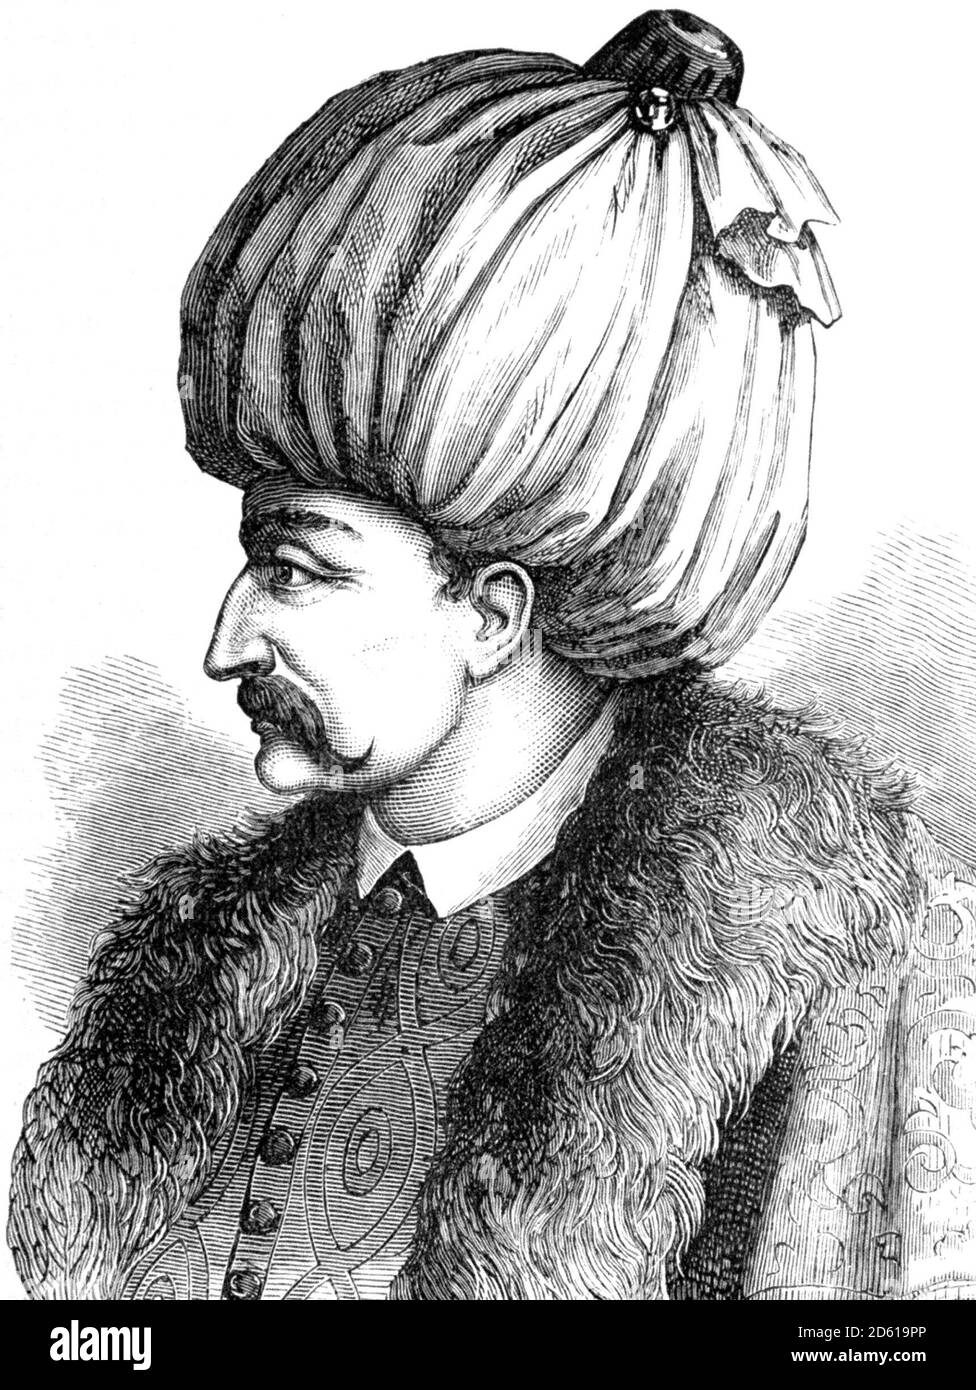 Suleiman der Magnificent. Porträt des zehnten und am längsten regierenden Sultans des Osmanischen Reiches, Suleiman I. (1494-1566), Stich aus dem 19. Jahrhundert Stockfoto